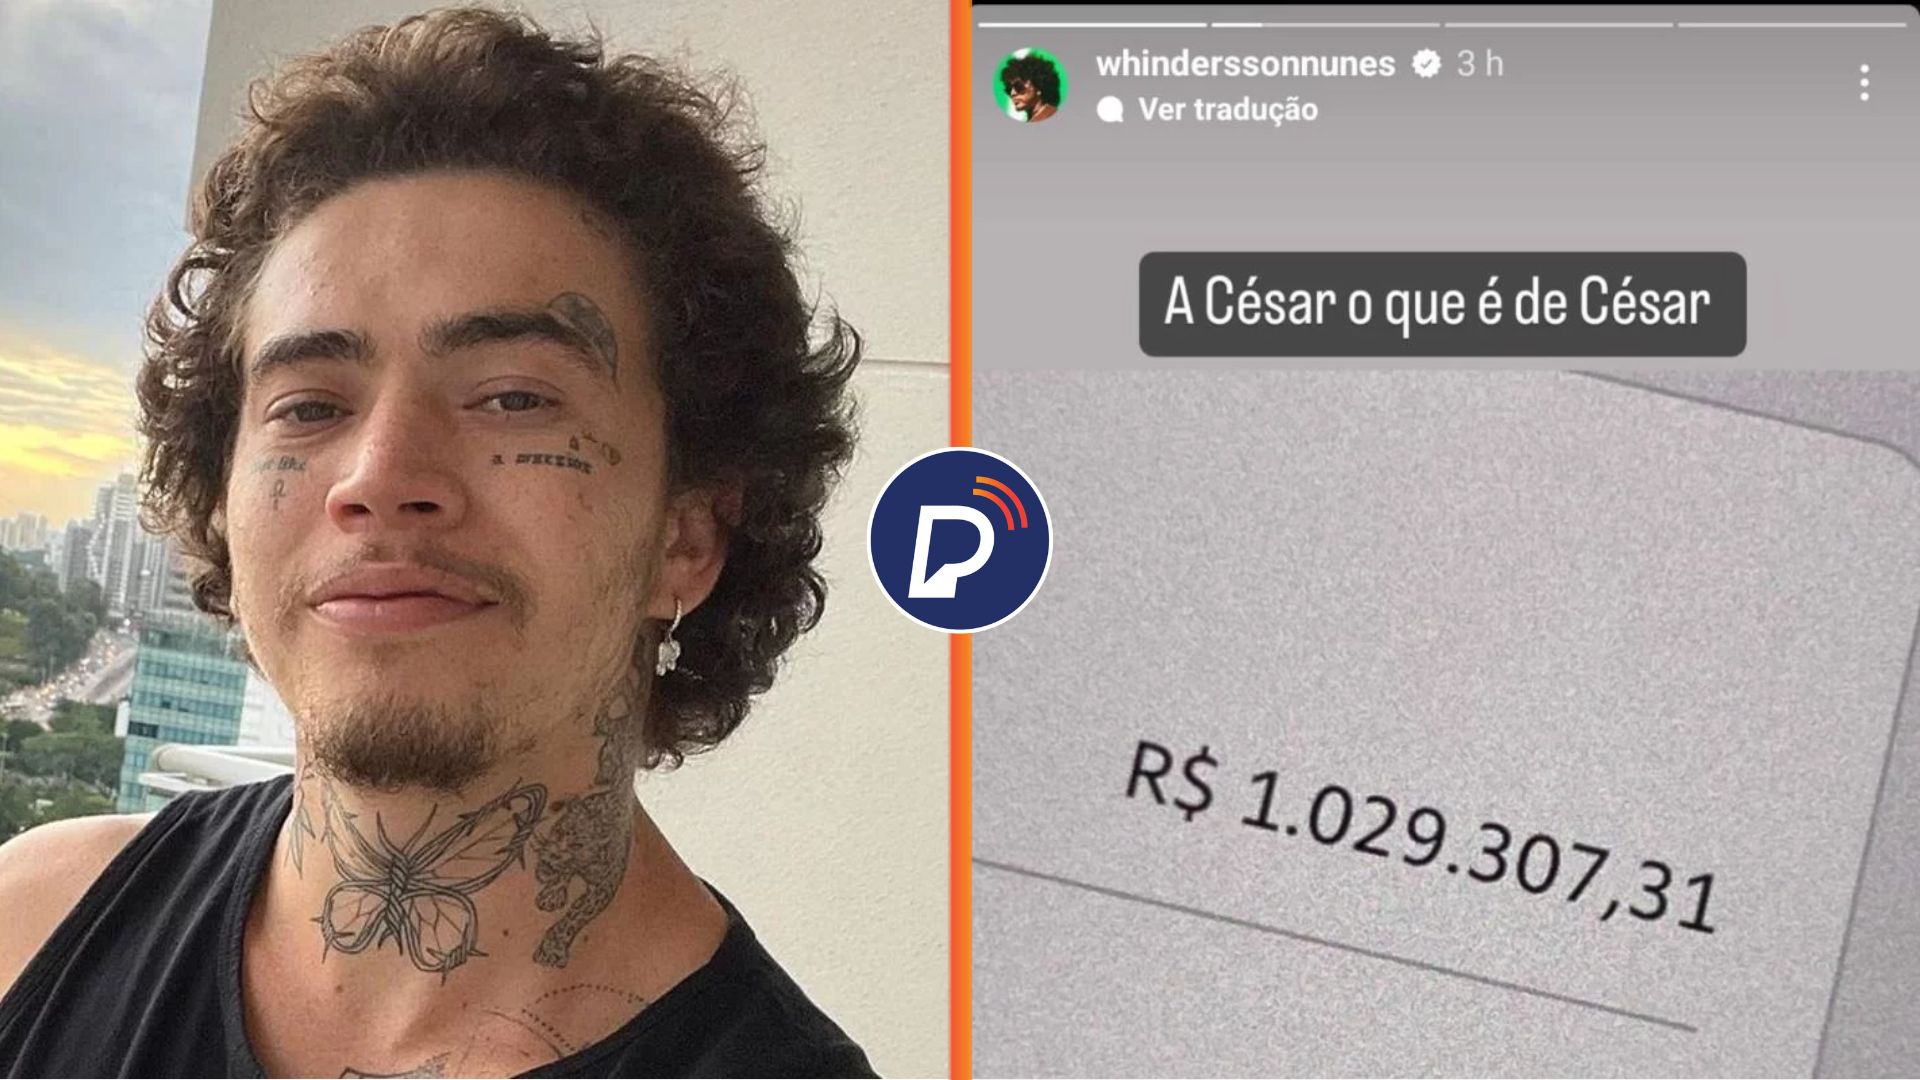 Whindersson Nunes arrecada mais de R$ 1 MILHÃO para desalojados no RS.